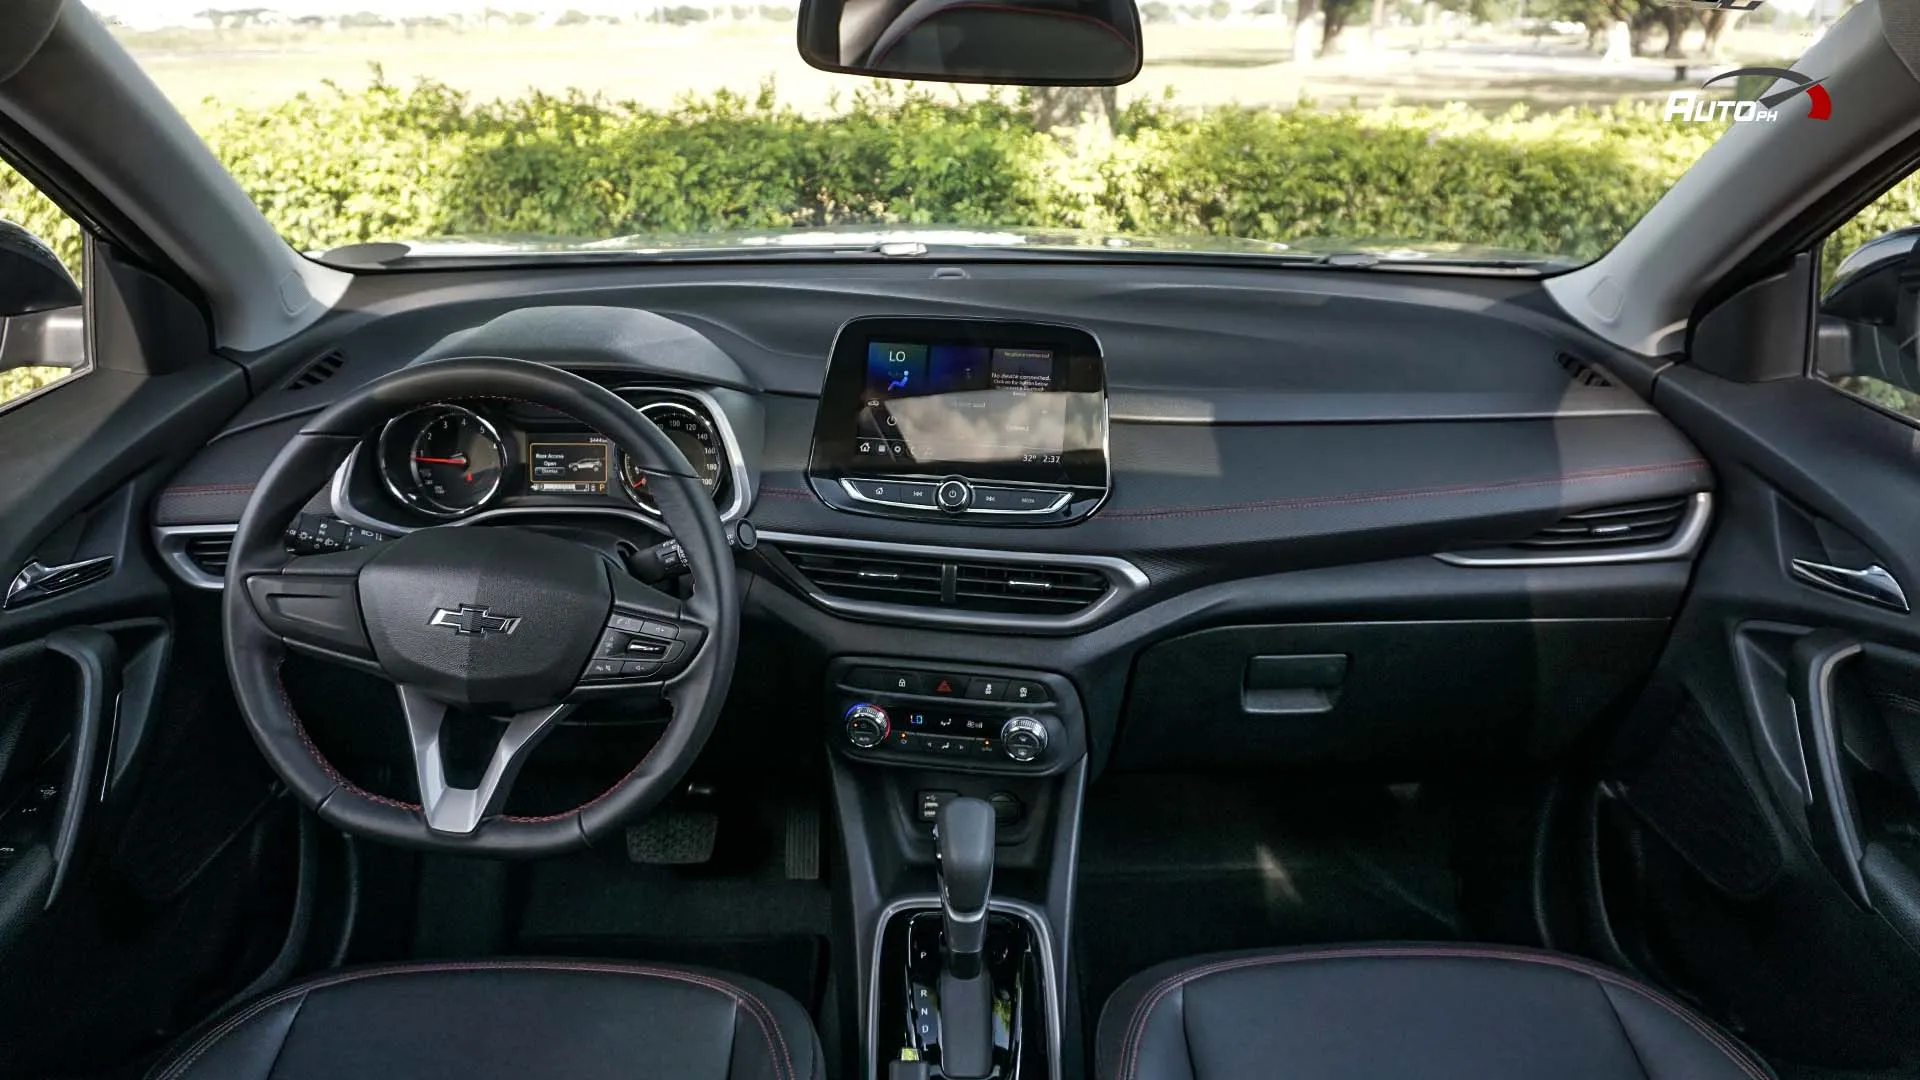 Chevrolet Tracker interior - Cockpit